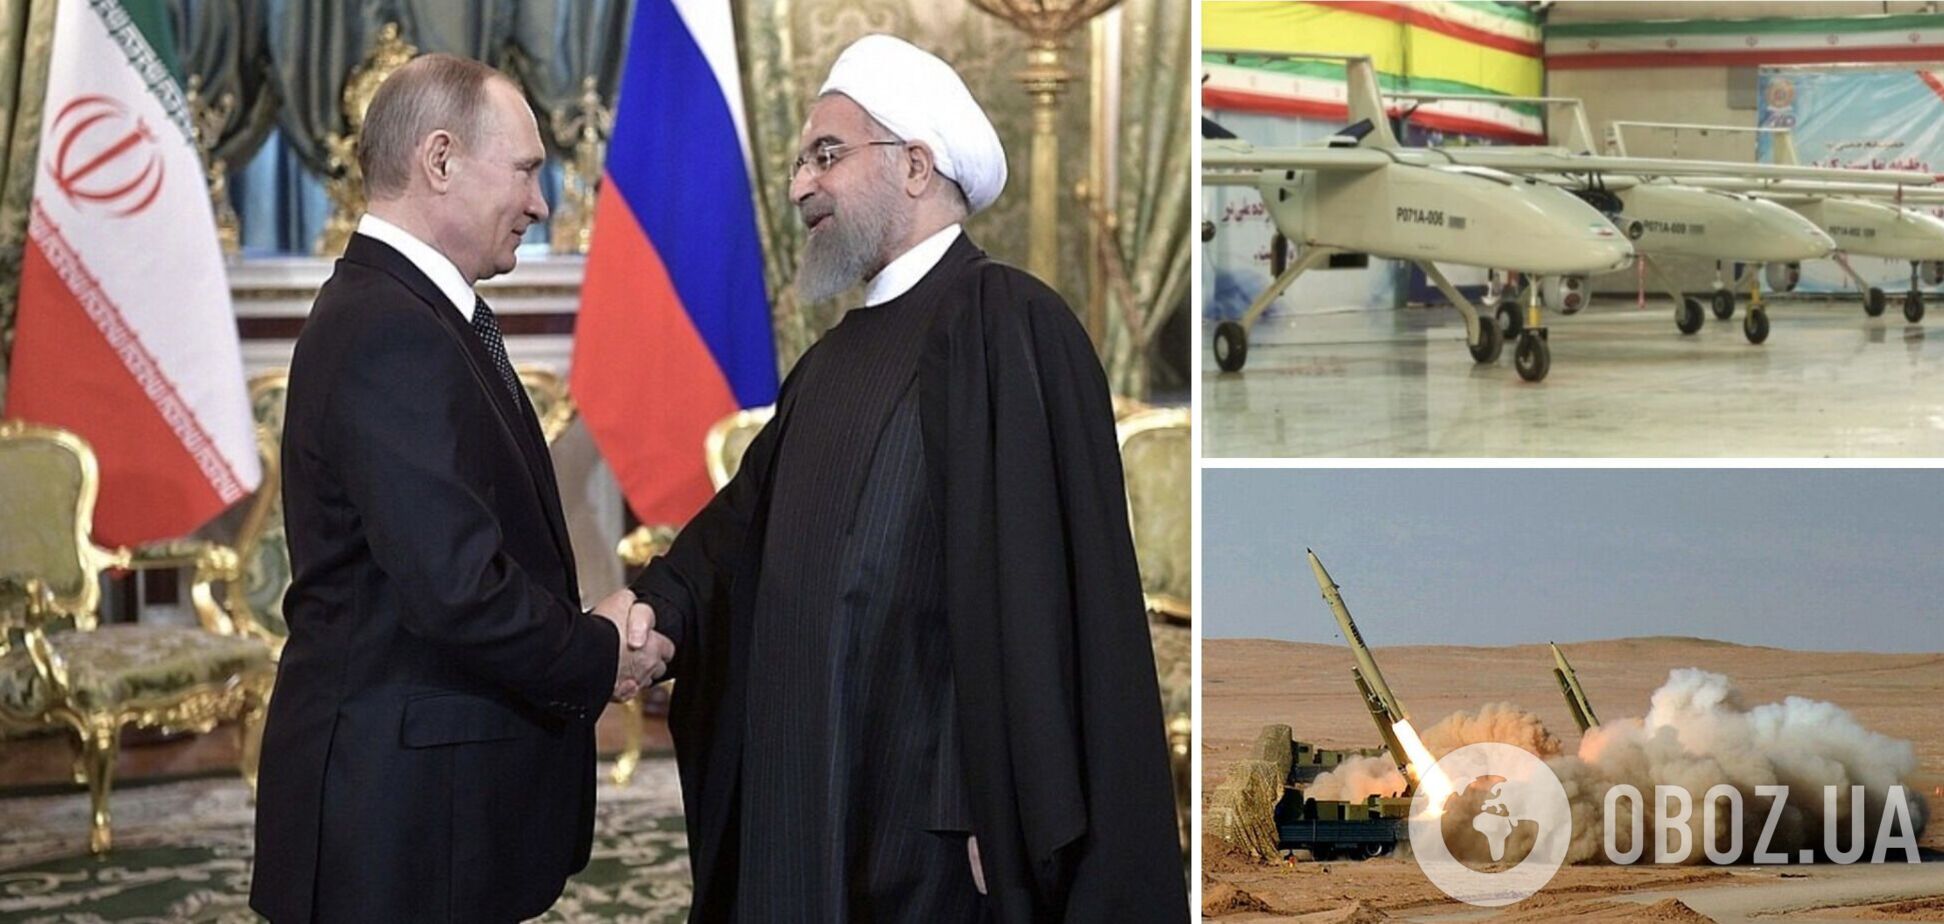 Разведка Британии рассказала, что Иран может получить от РФ в обмен на ракеты, и оценила риски для Украины